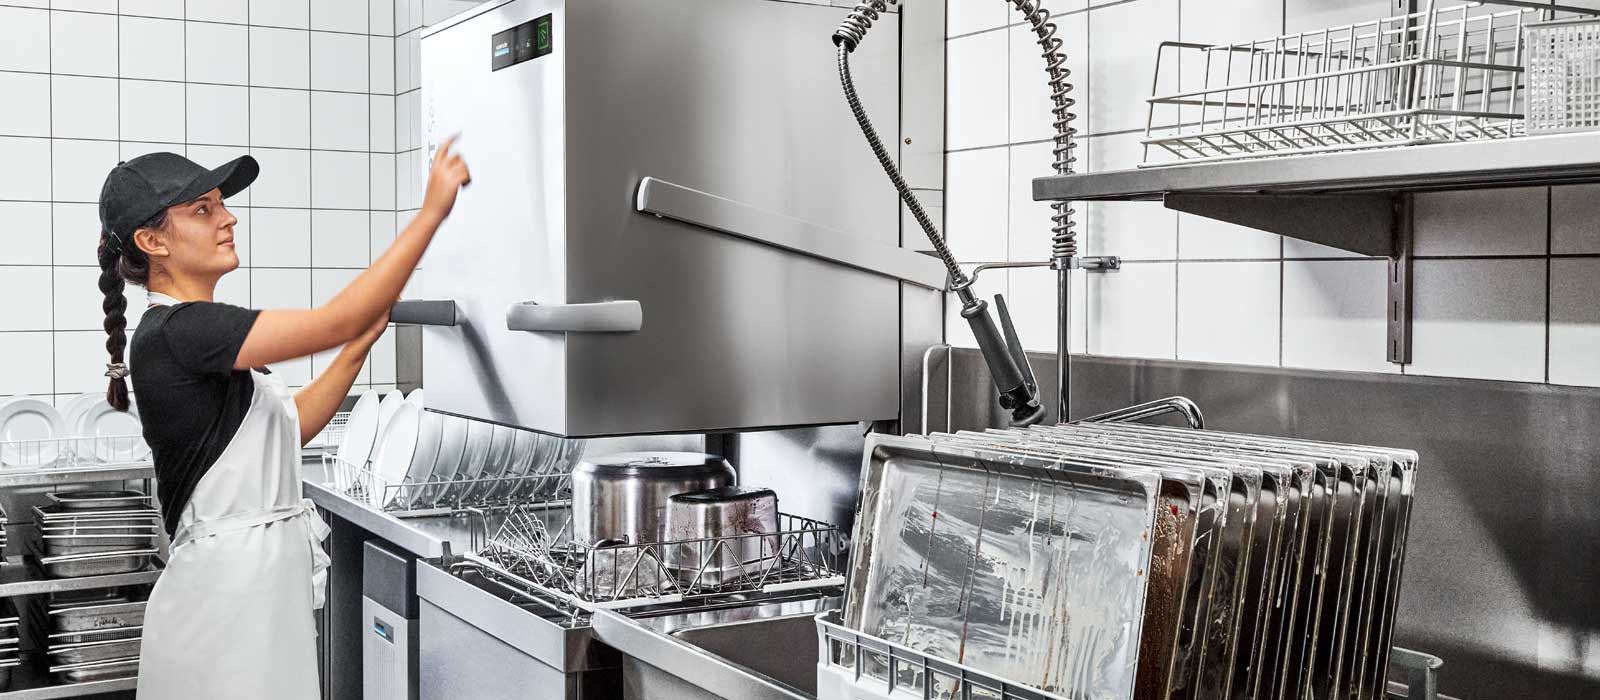 温特豪德揭盖式洗碗机 PT Utensil 适用于餐具和器皿